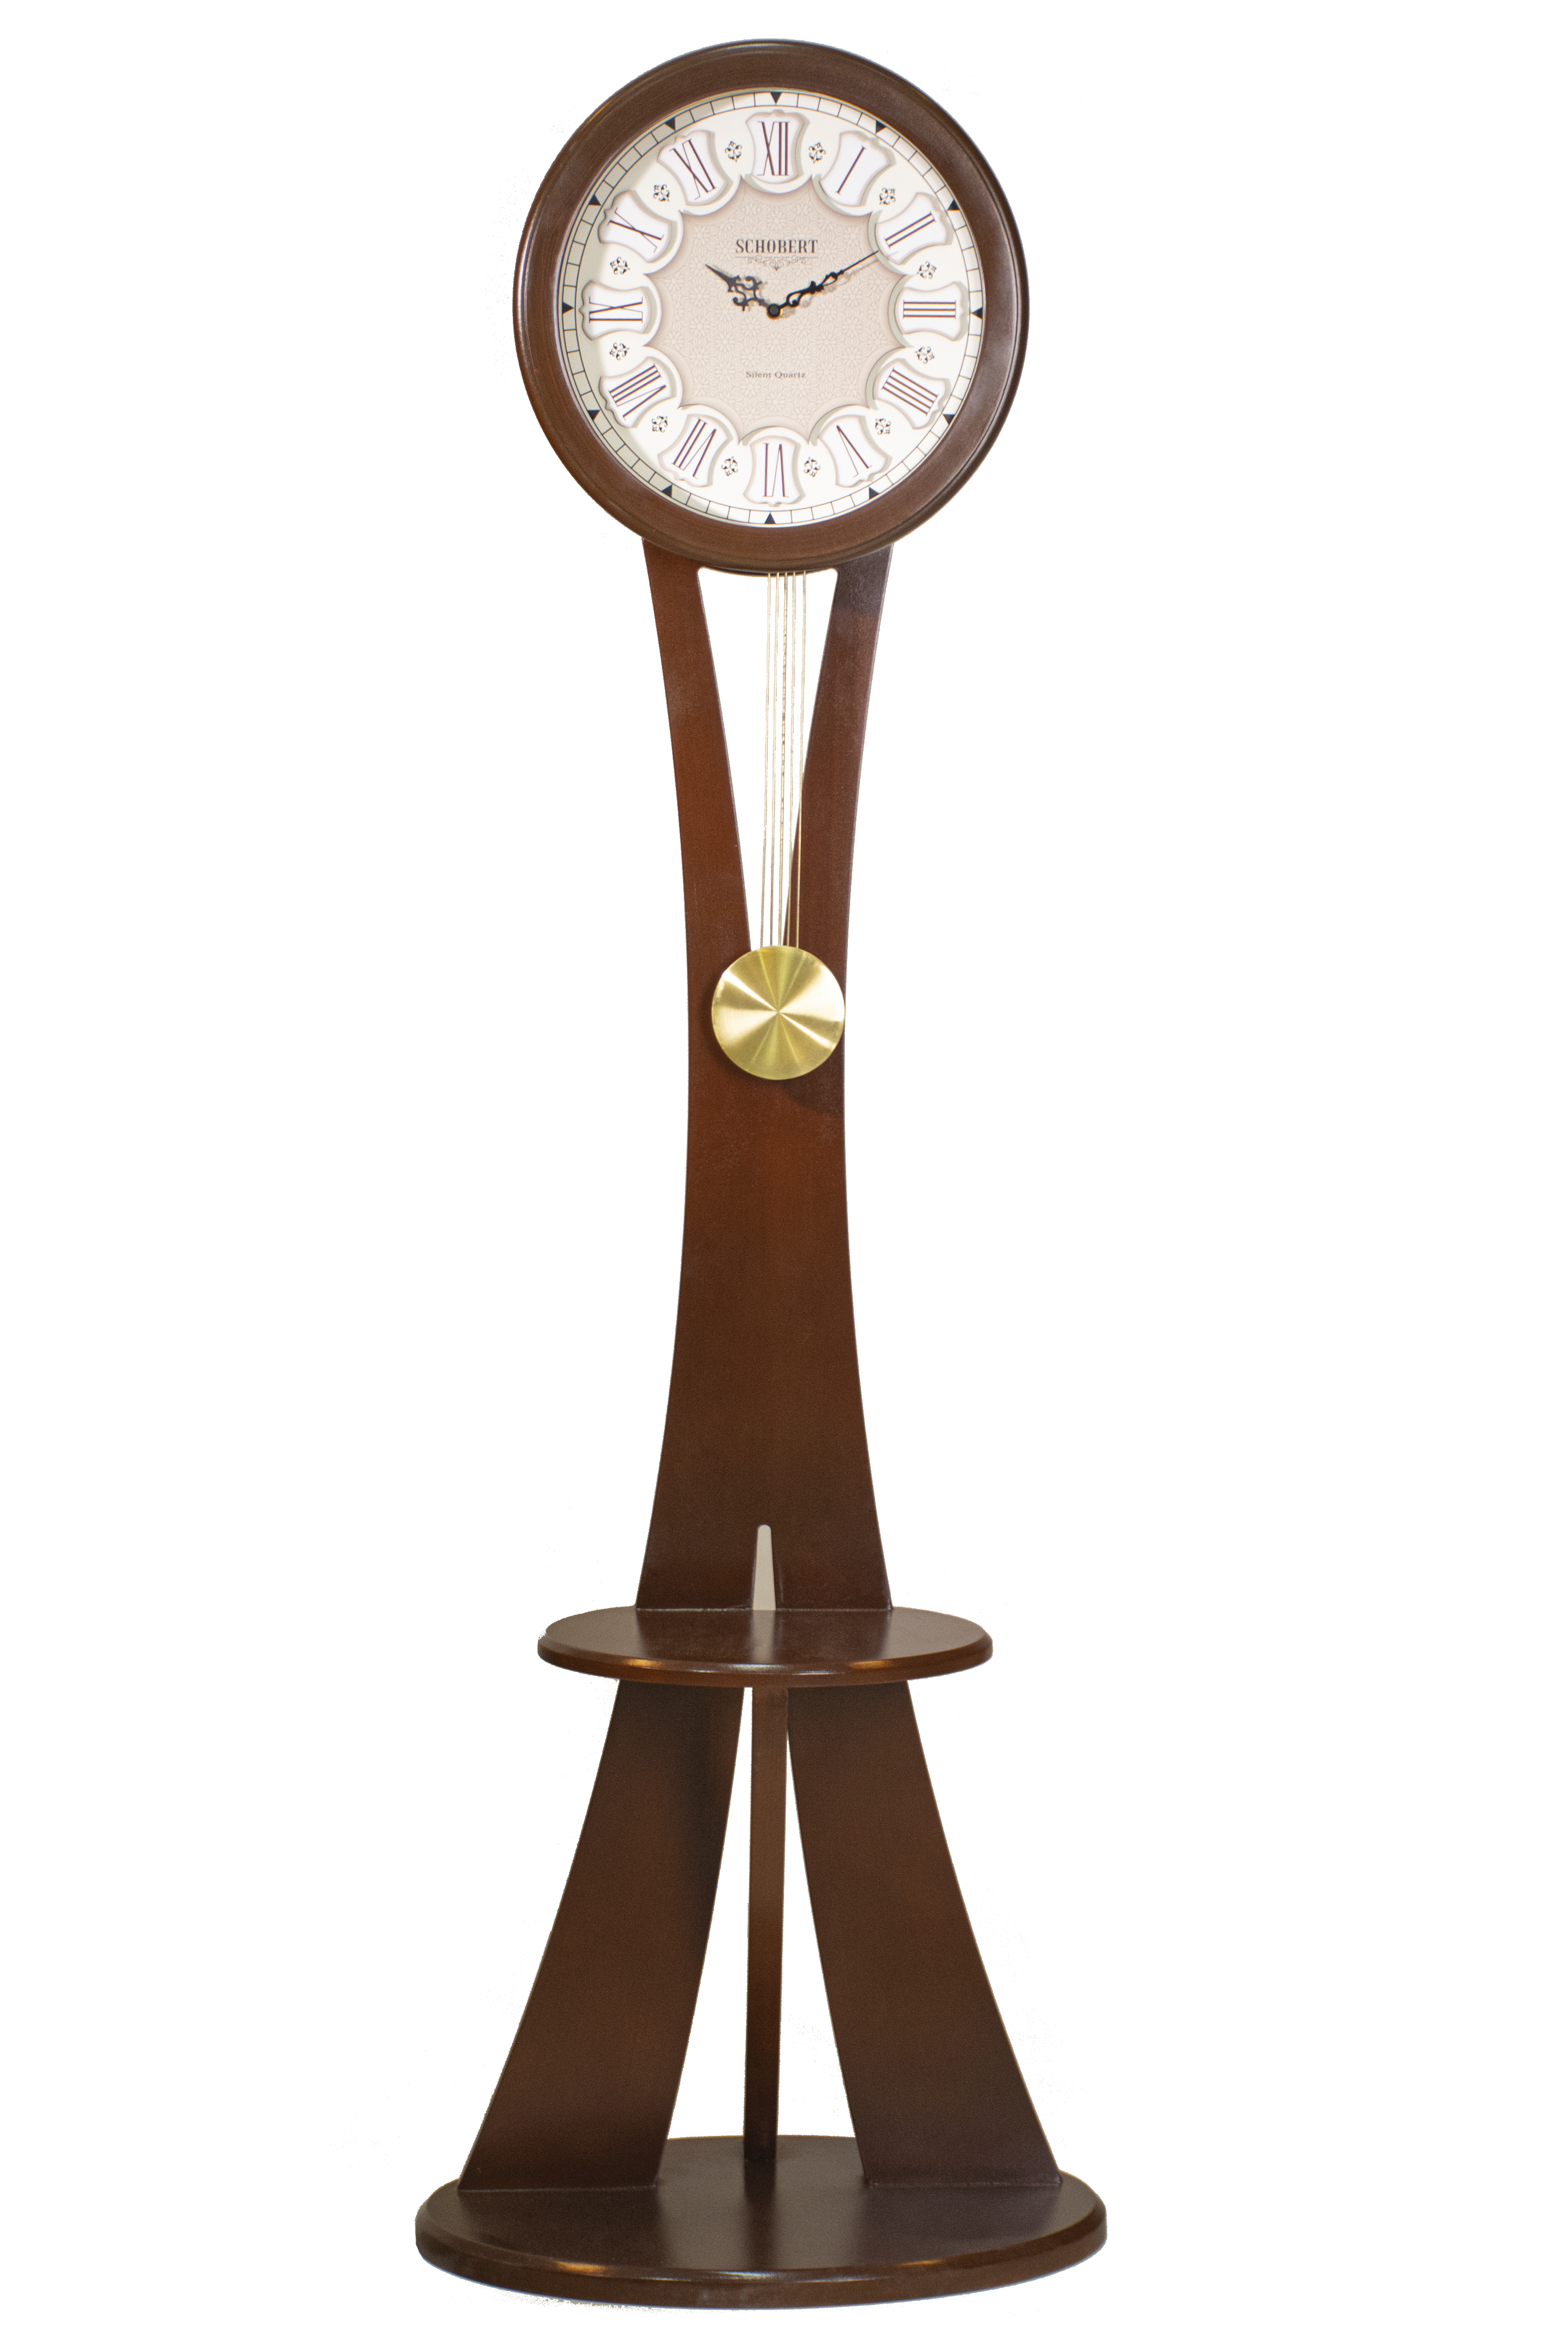 ساعت ایستاده چوبی شوبرت مدل فرمارسی - 6653